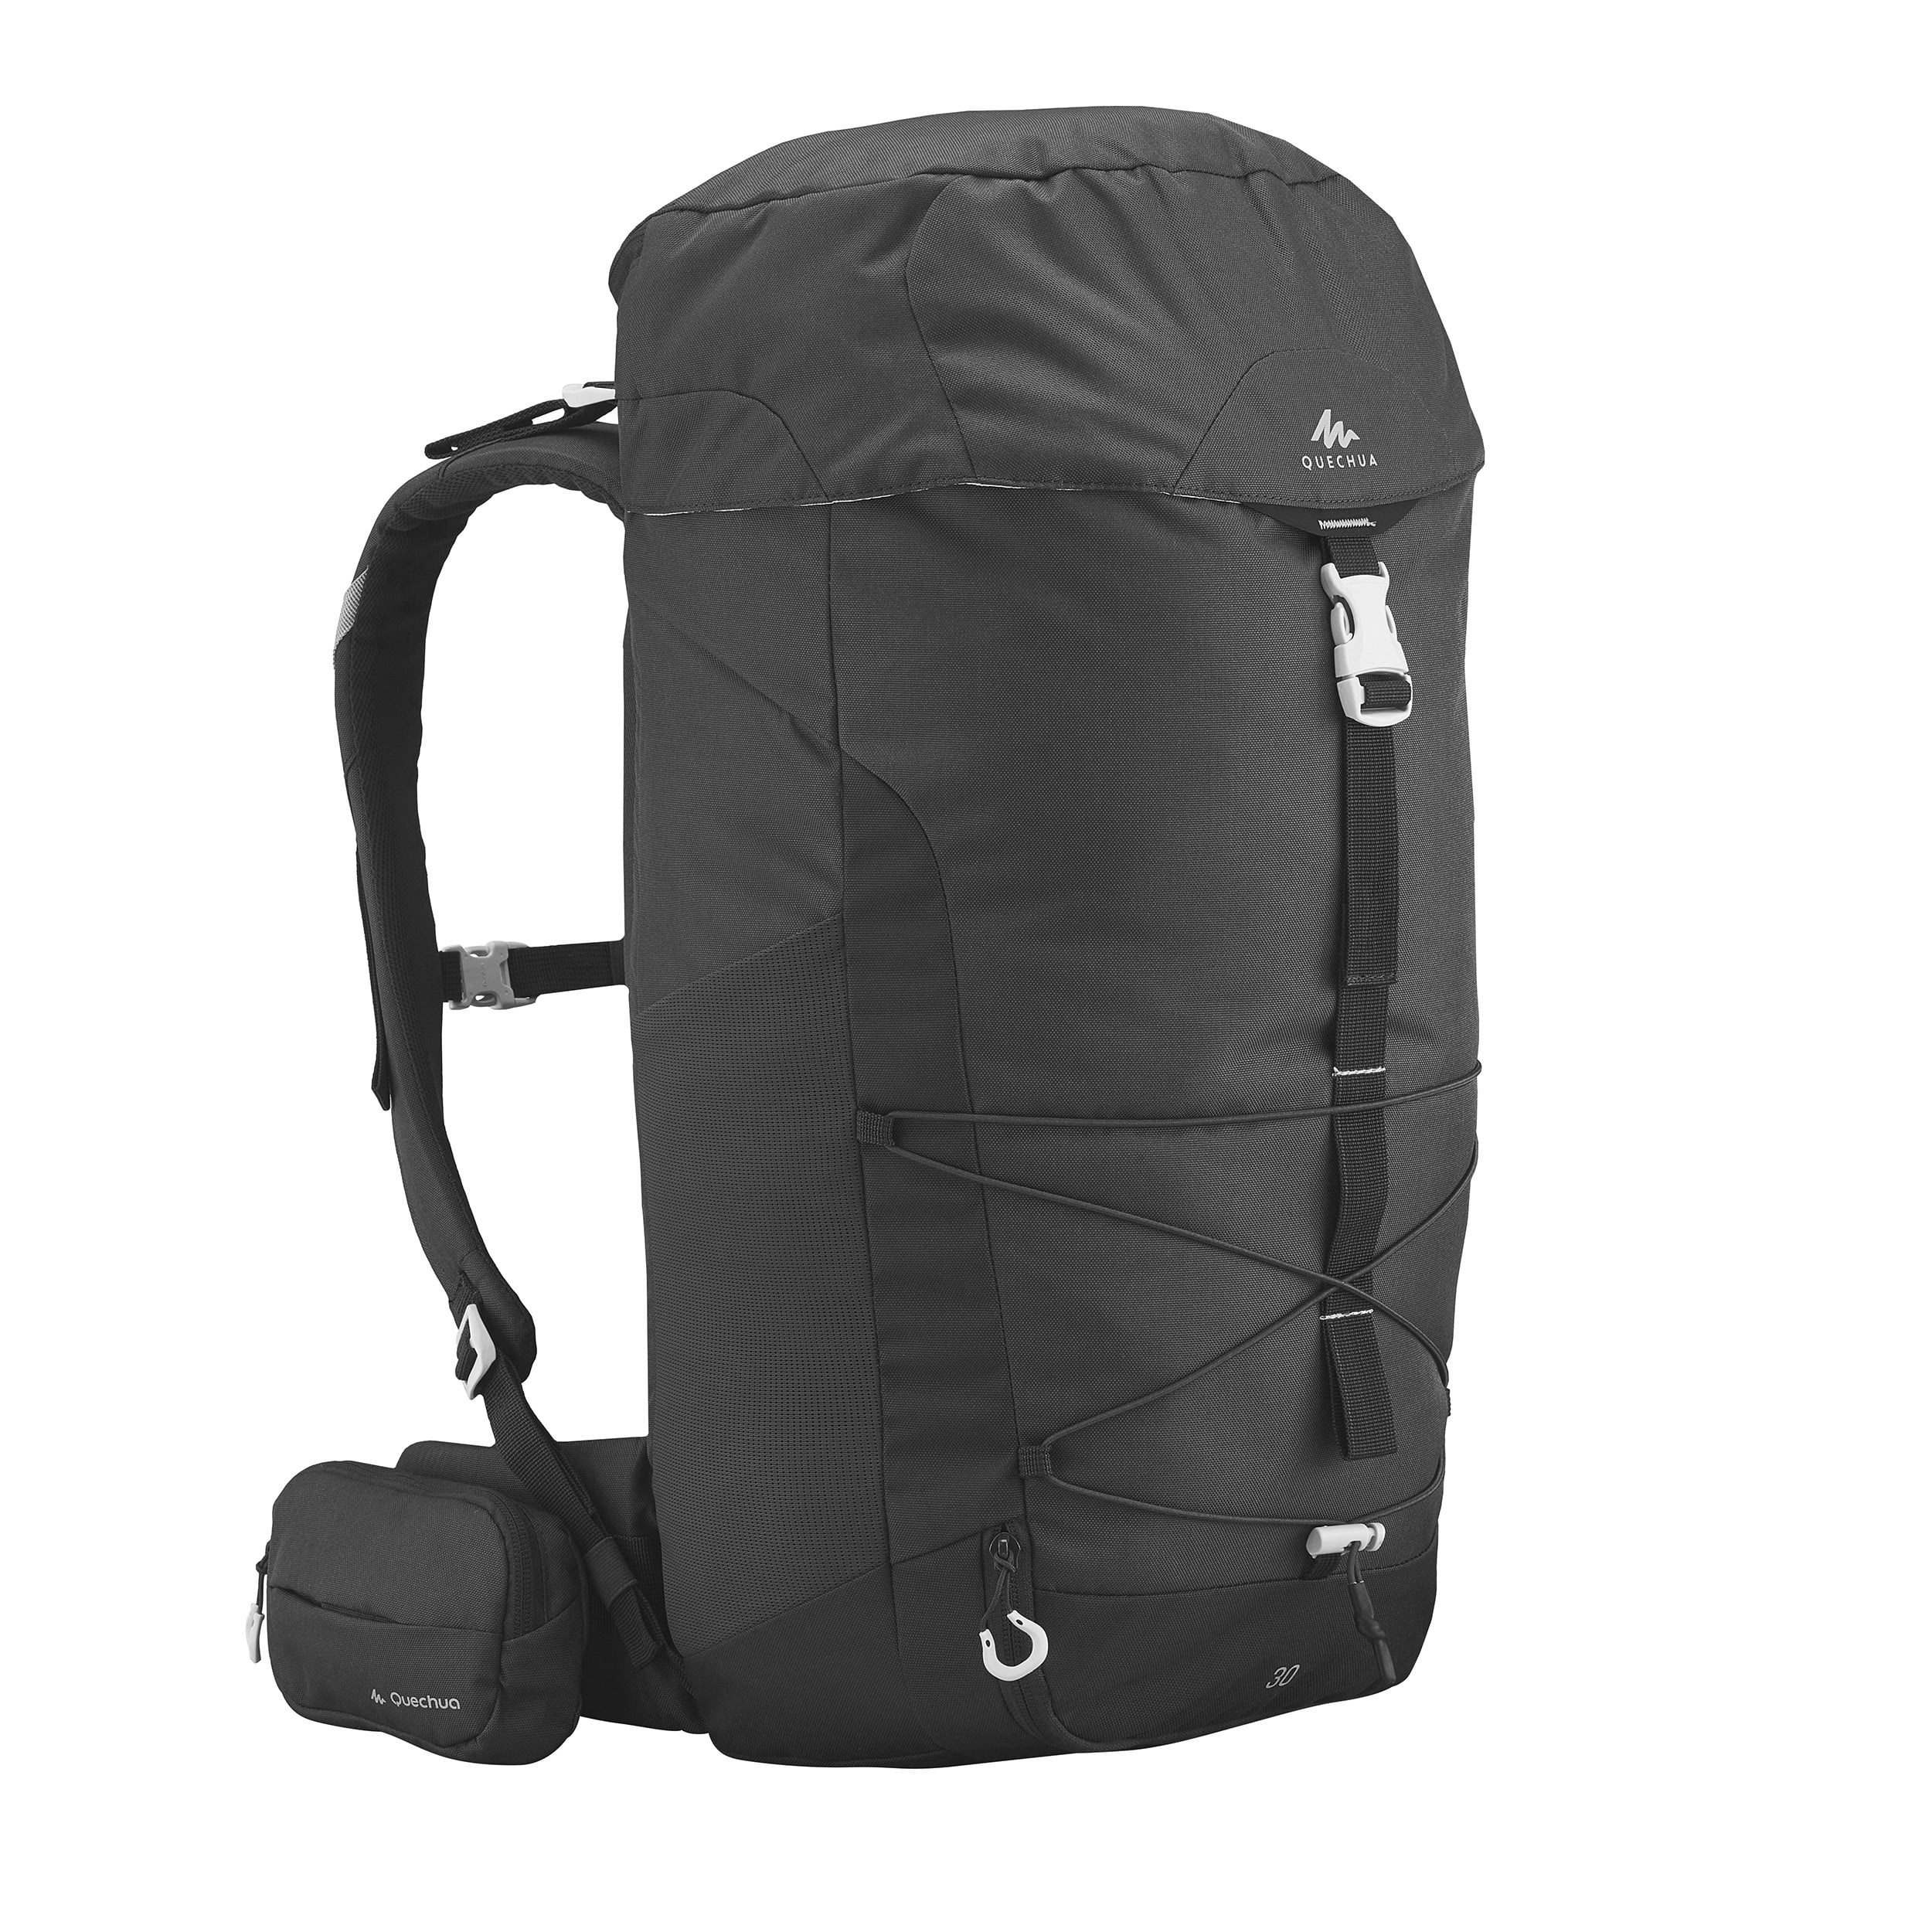 Decathlon Quechua MH100, Adult Backpack, 30 L, Black Walmart.com